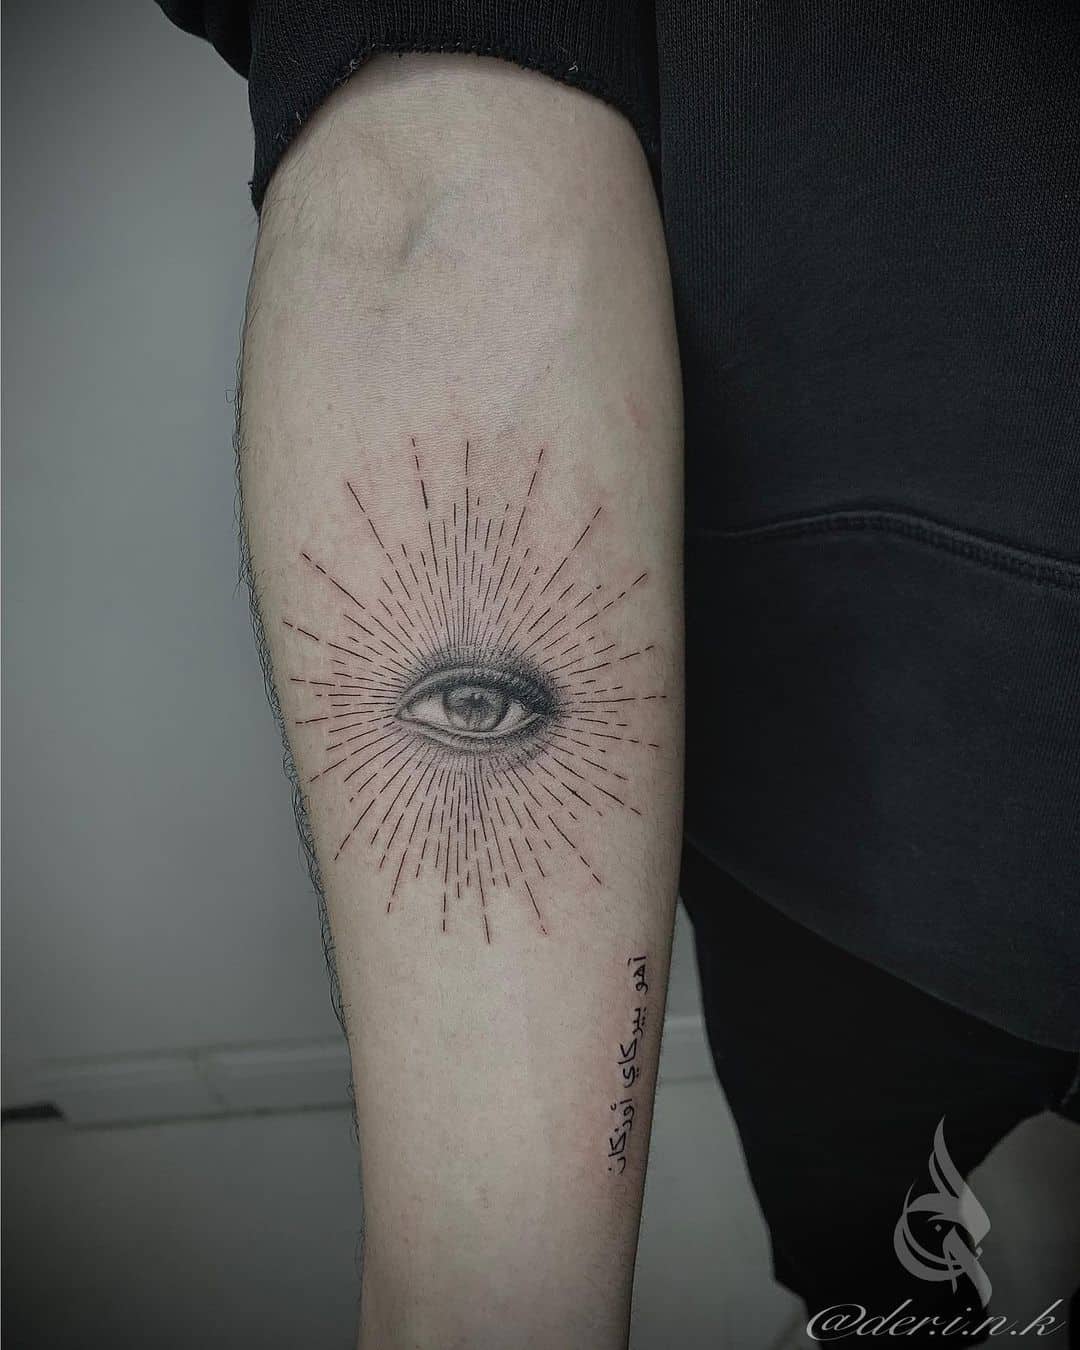 Dotwork eye tattoo by der.i.n.k